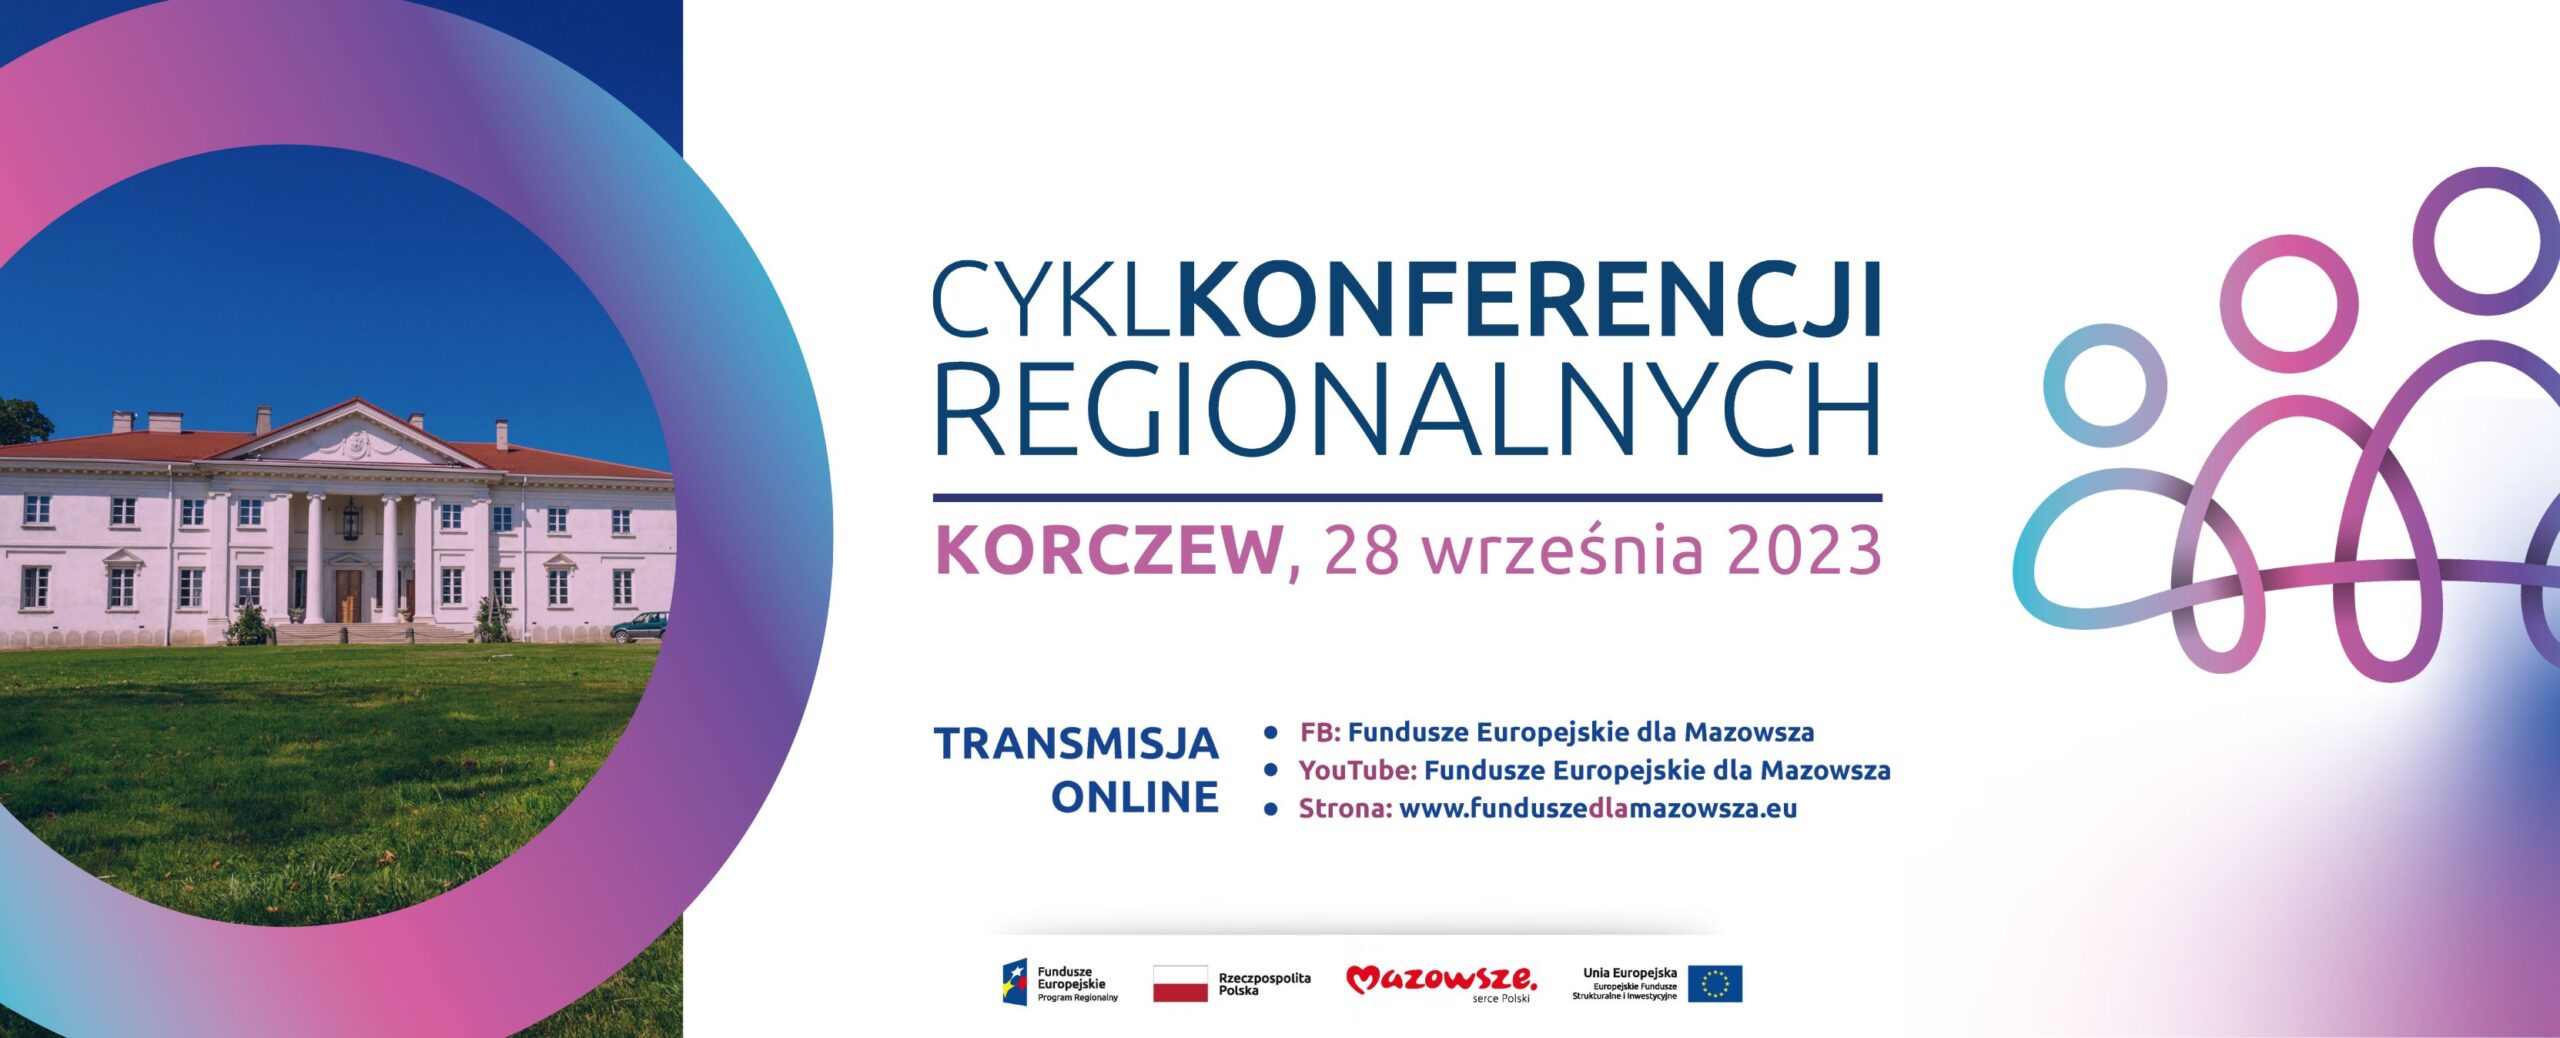 Na grafice znajduje się napis: Cykl Konferencji Regionalnych Korczew 28 września 2023, poniżej zamieszczone są linki do strony internetowej funduszeeuropejskiedlamazowsza.eu oraz profili na facebooku oraz yt.